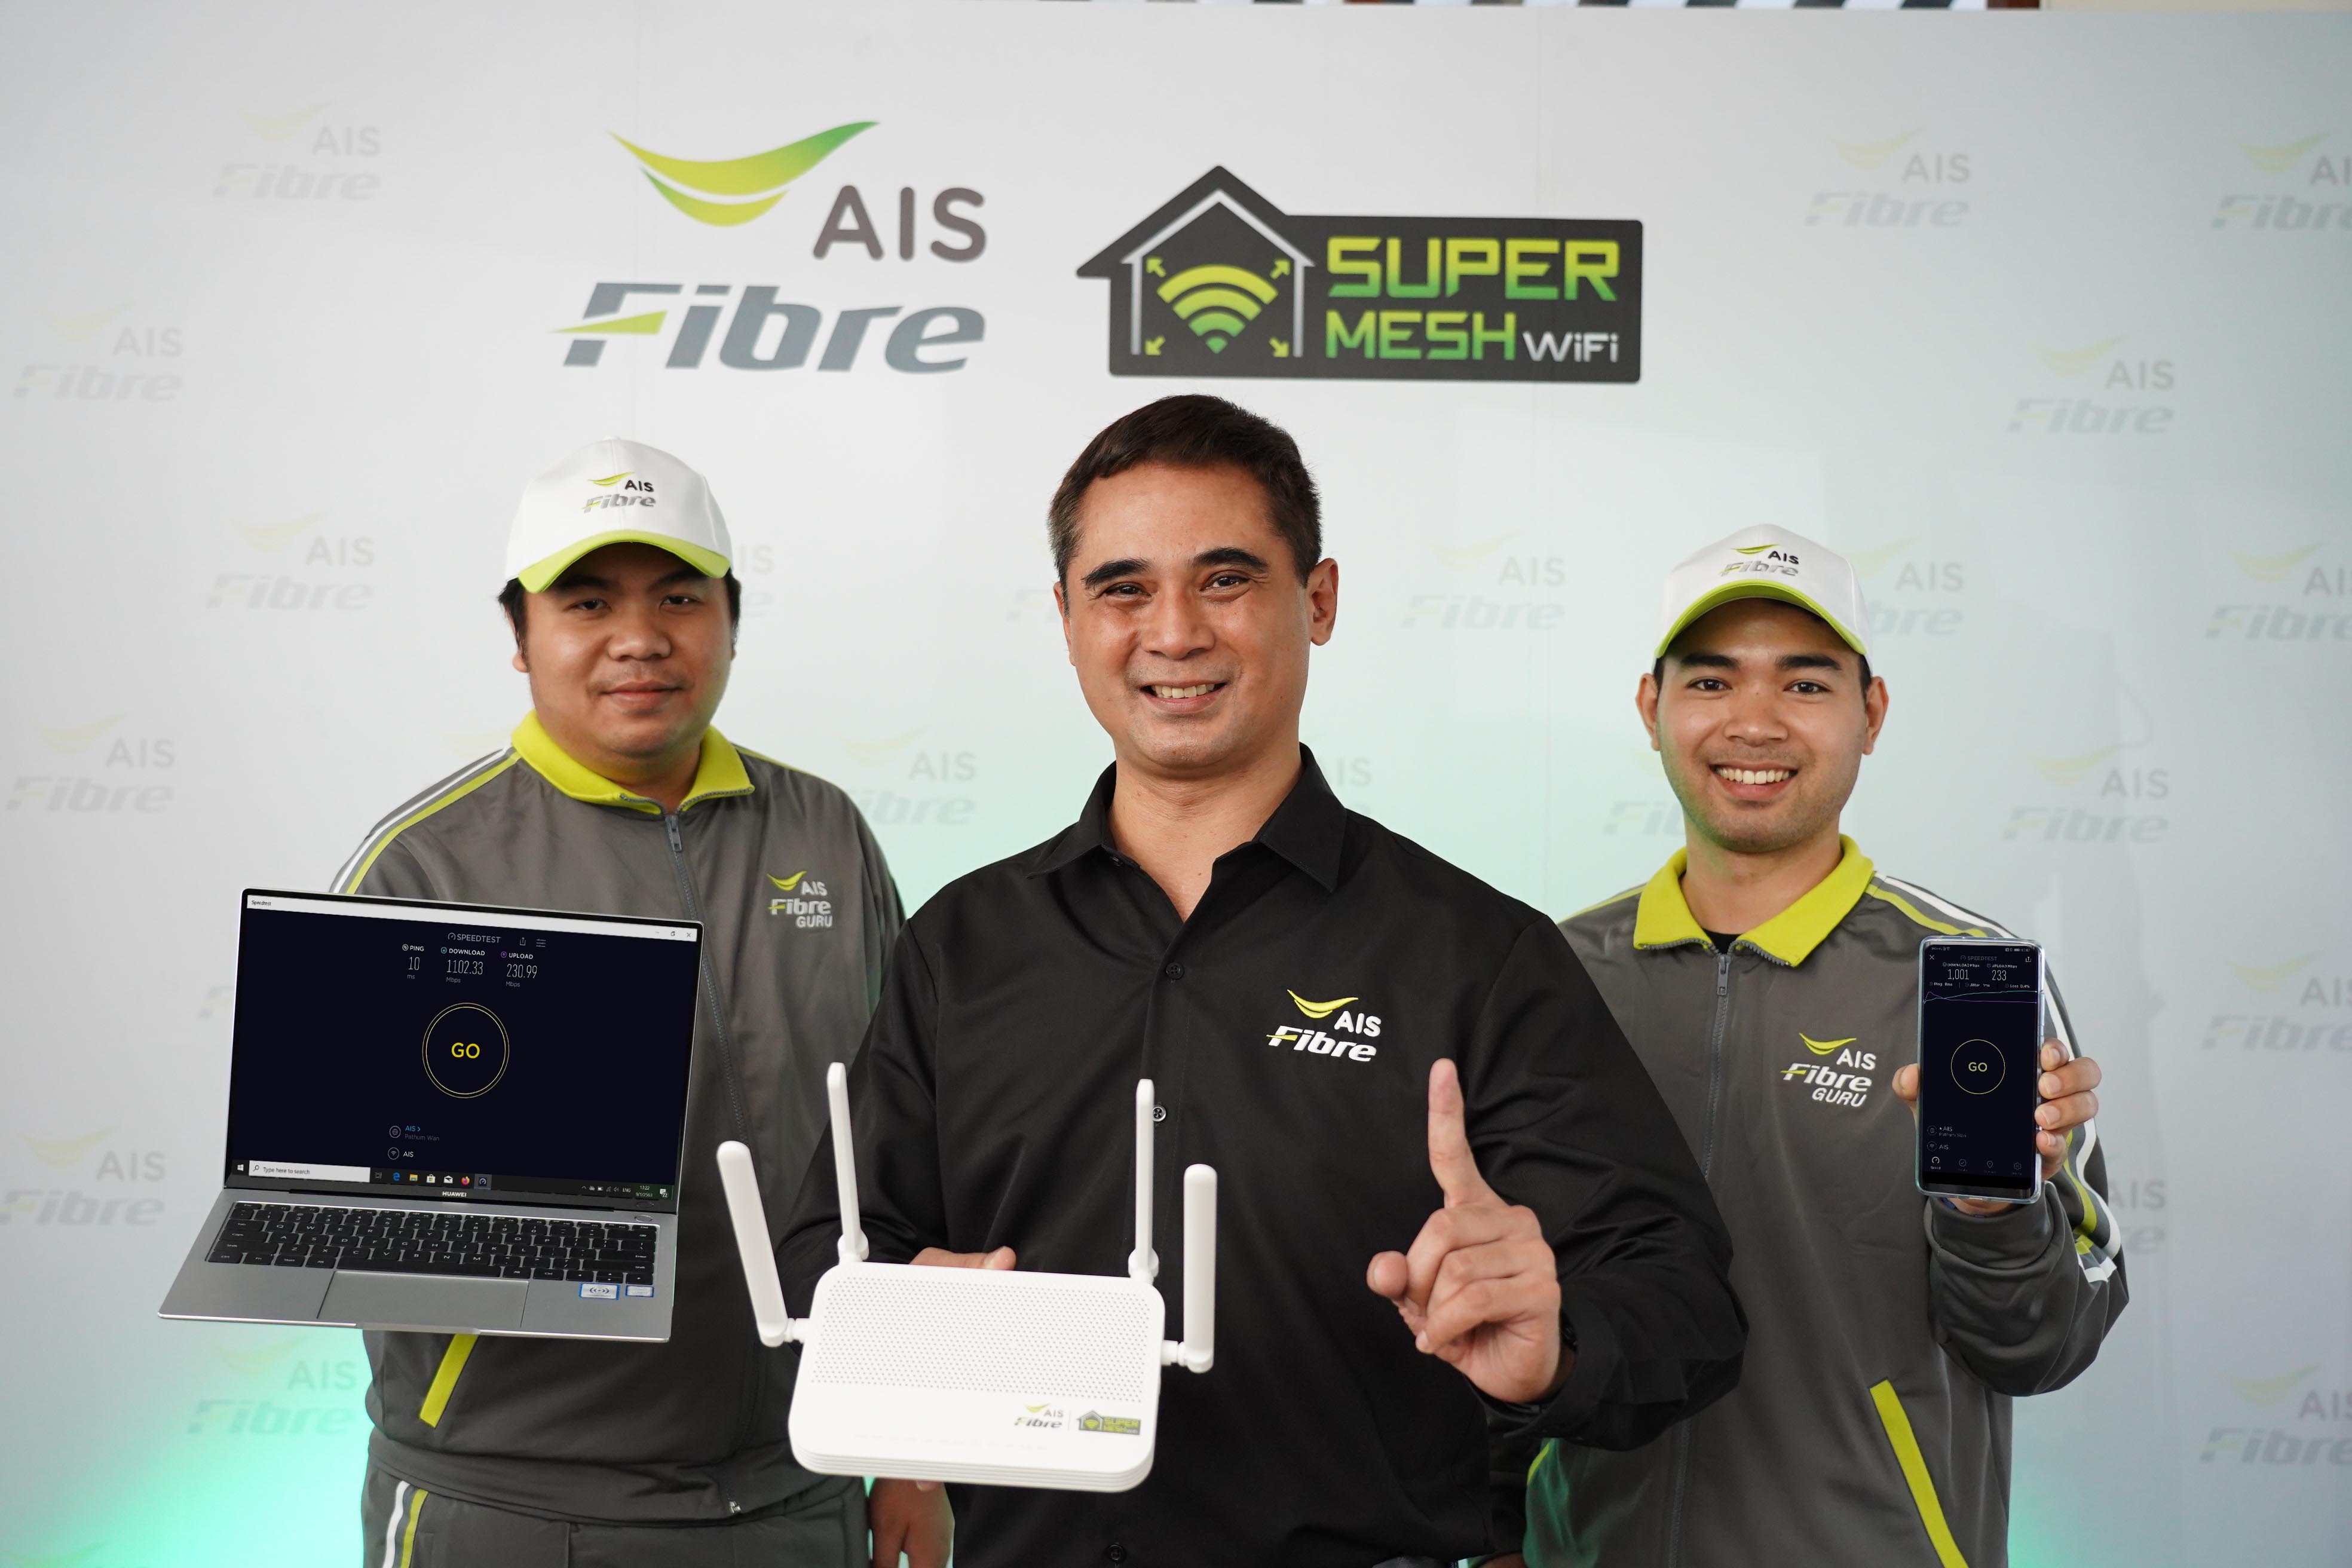 เน็ตบ้านคุณภาพ!AIS Fibre นวัตกรรม SuperMESH WiFi รายเดียวในไทยมอบสปีดสูงสุด 1 Gbps ตัวจริง บน WiFi